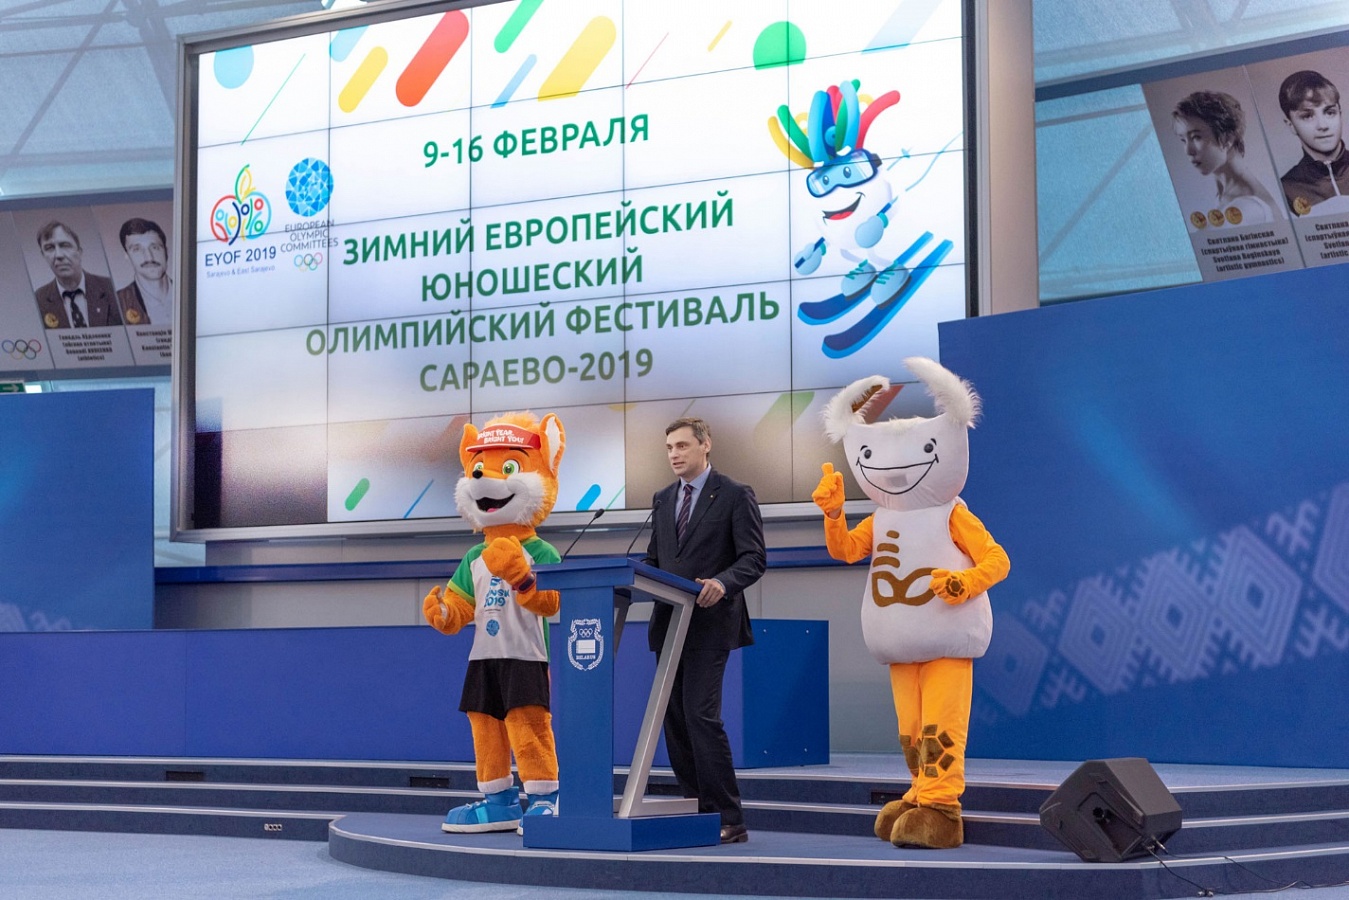 Заместитель Председателя Правления ОАО «Белагропромбанк» Сергей Чугай выступает с напутственным словом перед участниками белорусской олимпийской делегации.